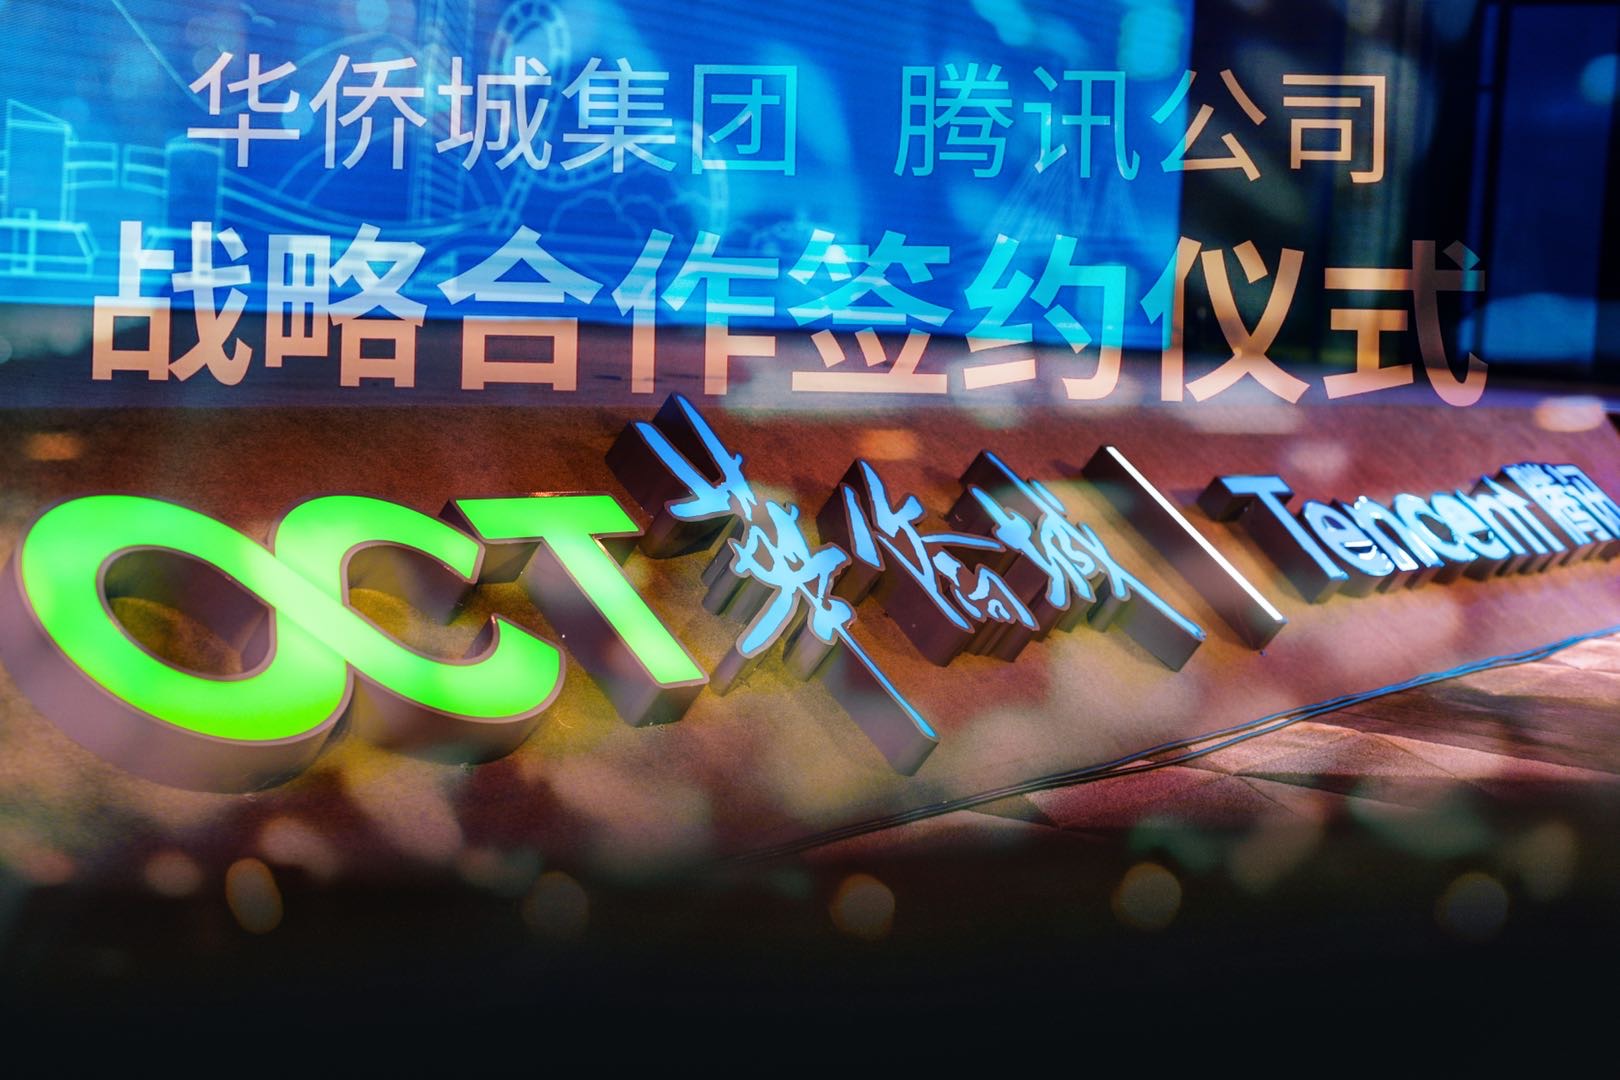 华侨城、腾讯签署战略合作协议 共建数字文旅新生态